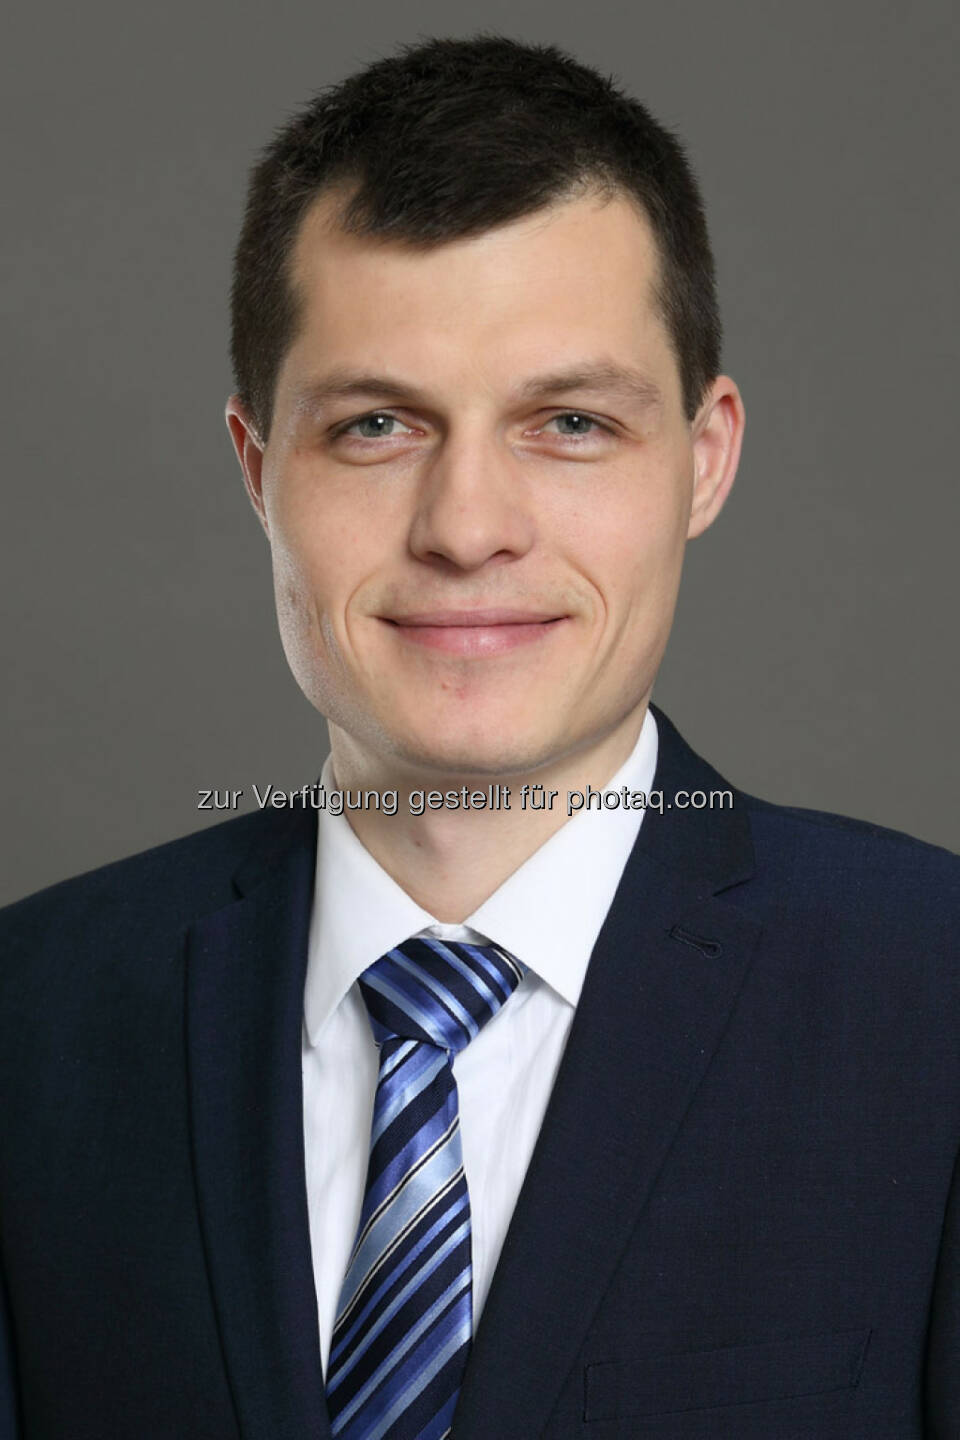 Petr Svoboda - seit 1. Jänner 2015 für CBRE in Prag tätig. Er übernimmt die Leitung des neu geschaffenen Ressorts Debt & Structured Finance für die Region CEE.
 